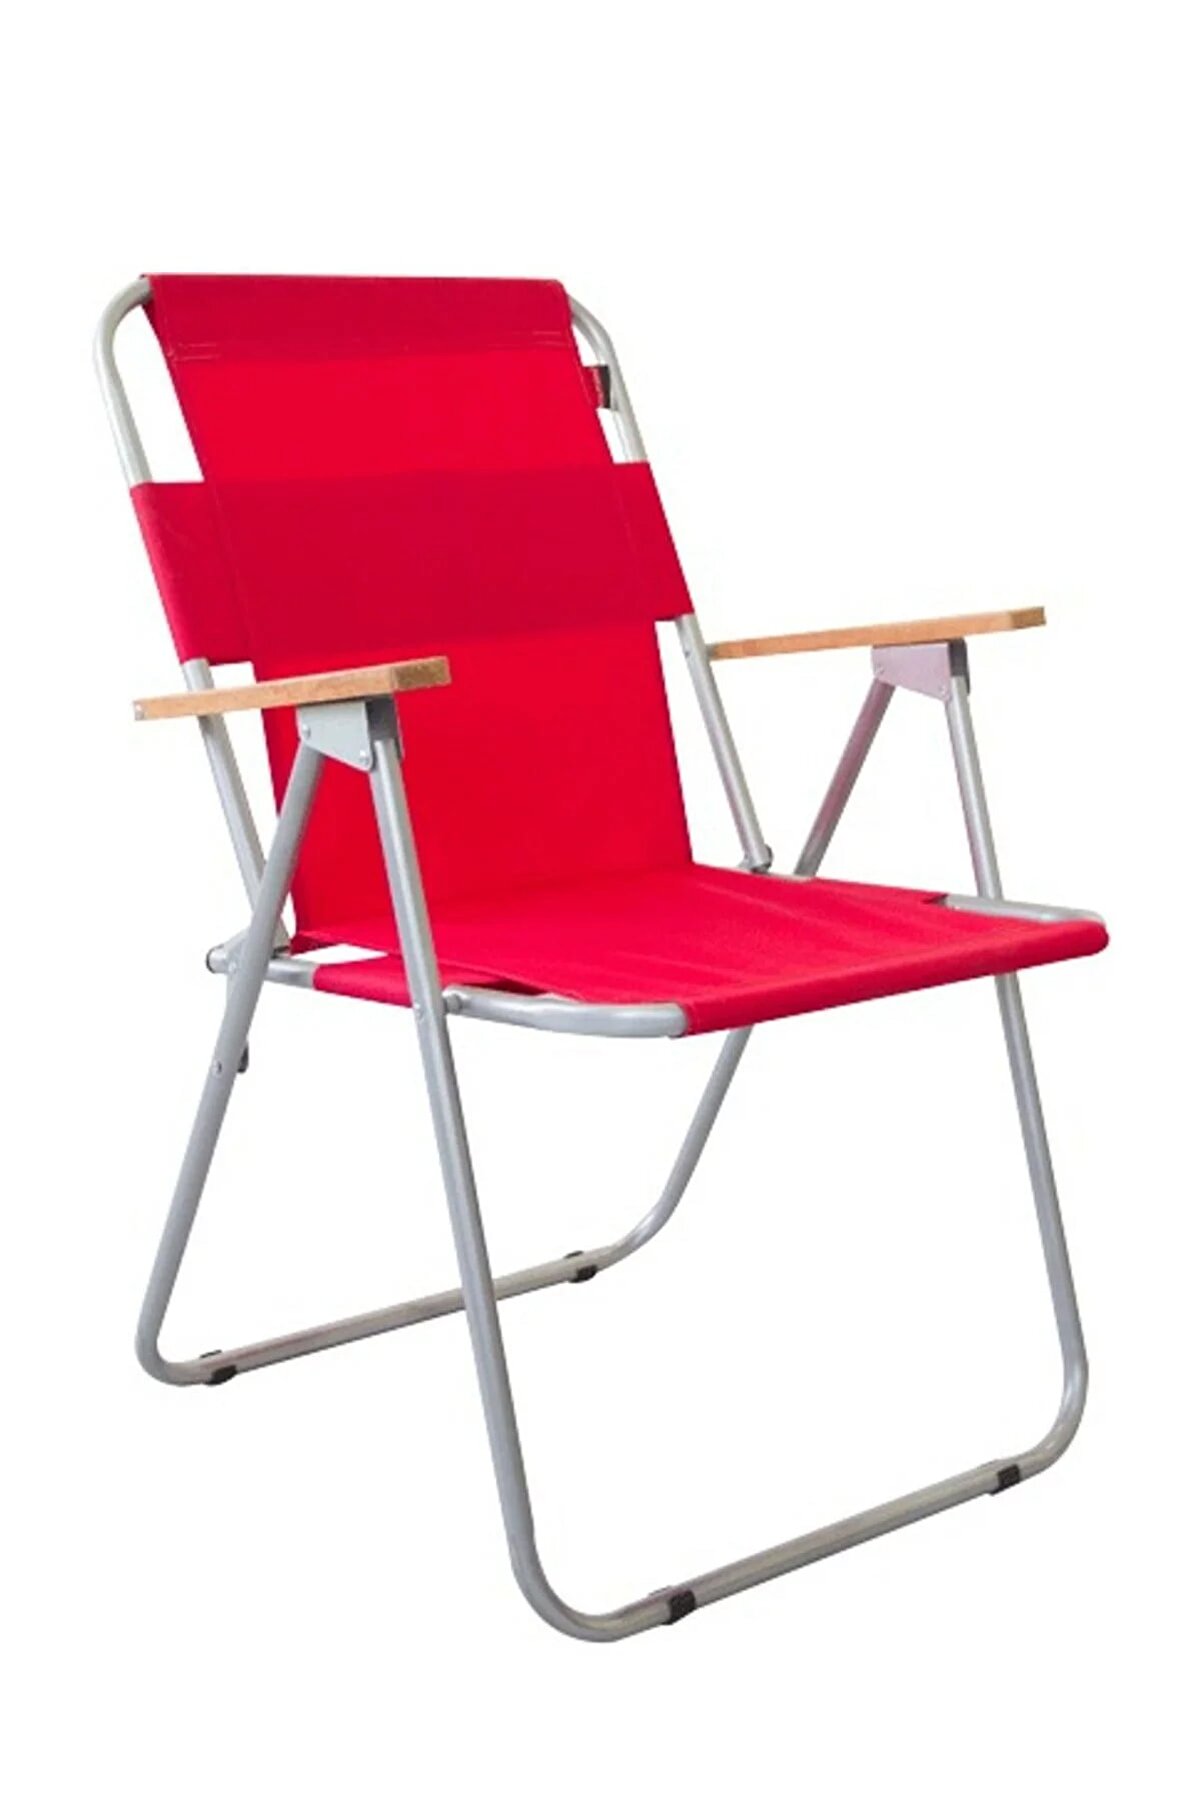 Bofigo Bahçe Sandalyesi Katlanır Sandalye Balkon Sandalyesi Kırmızı